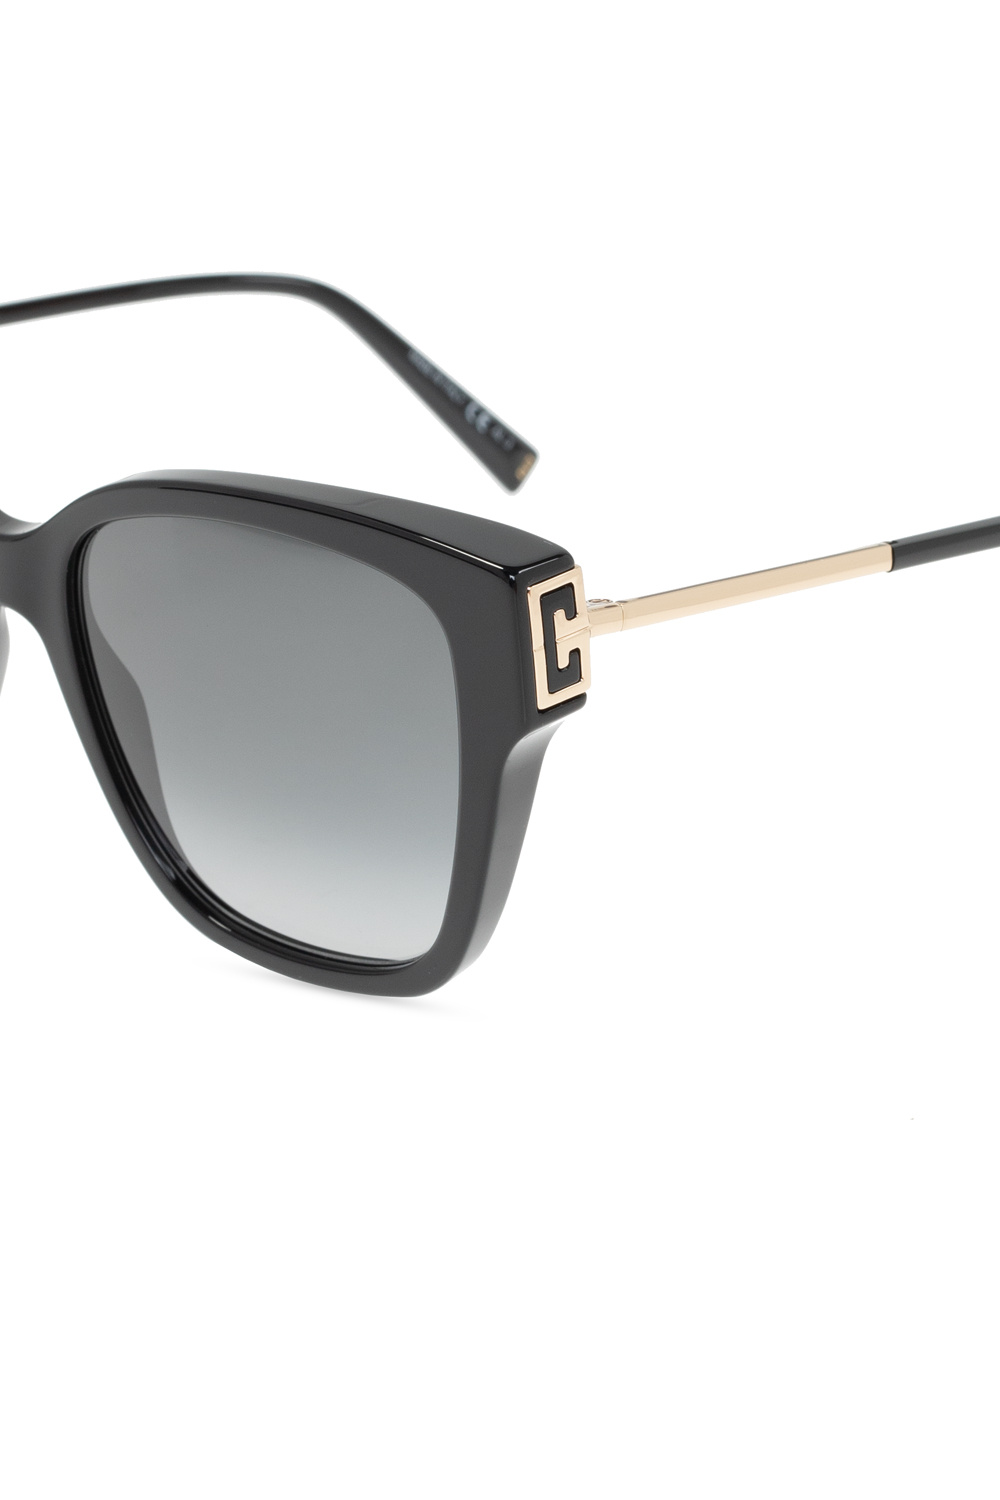 Givenchy x Maison Margiela pantos-frame sunglasses